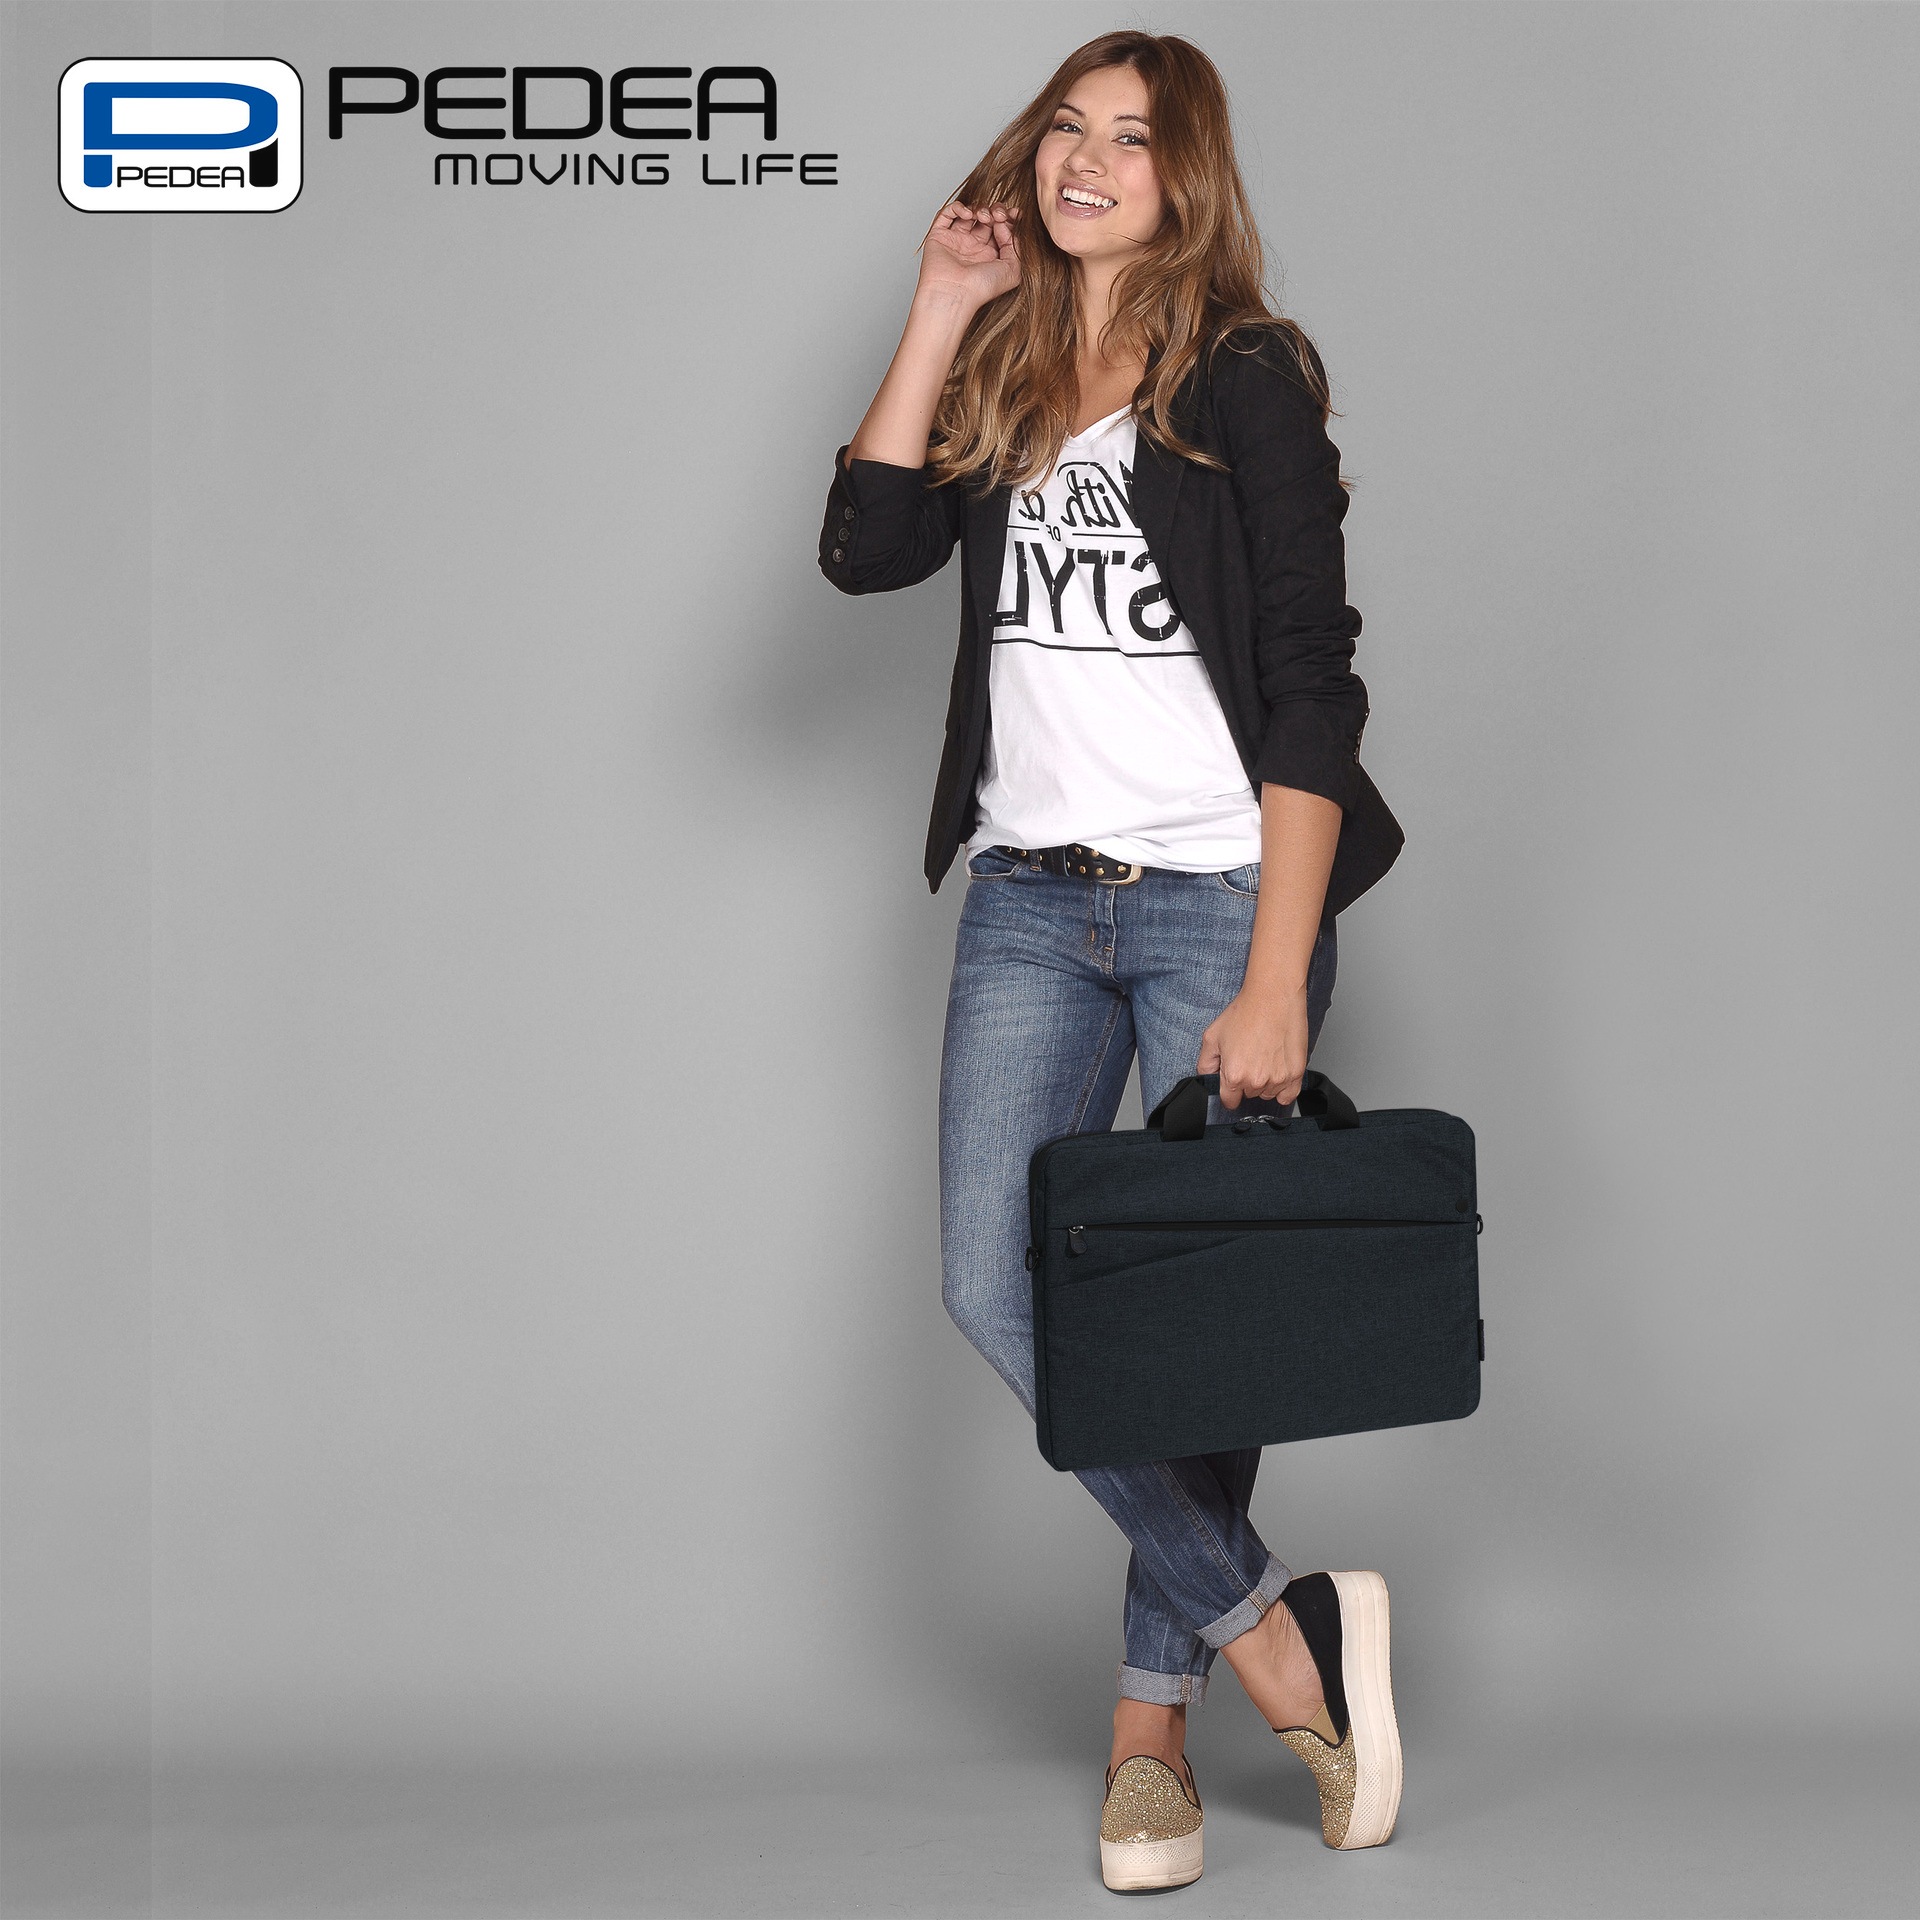 PEDEA Laptoptasche »Notebooktasche Fashion bis 33,8 cm (bis 13,3)«, dicke Polsterung und ein fleeceartiges, weiches Innenfutter